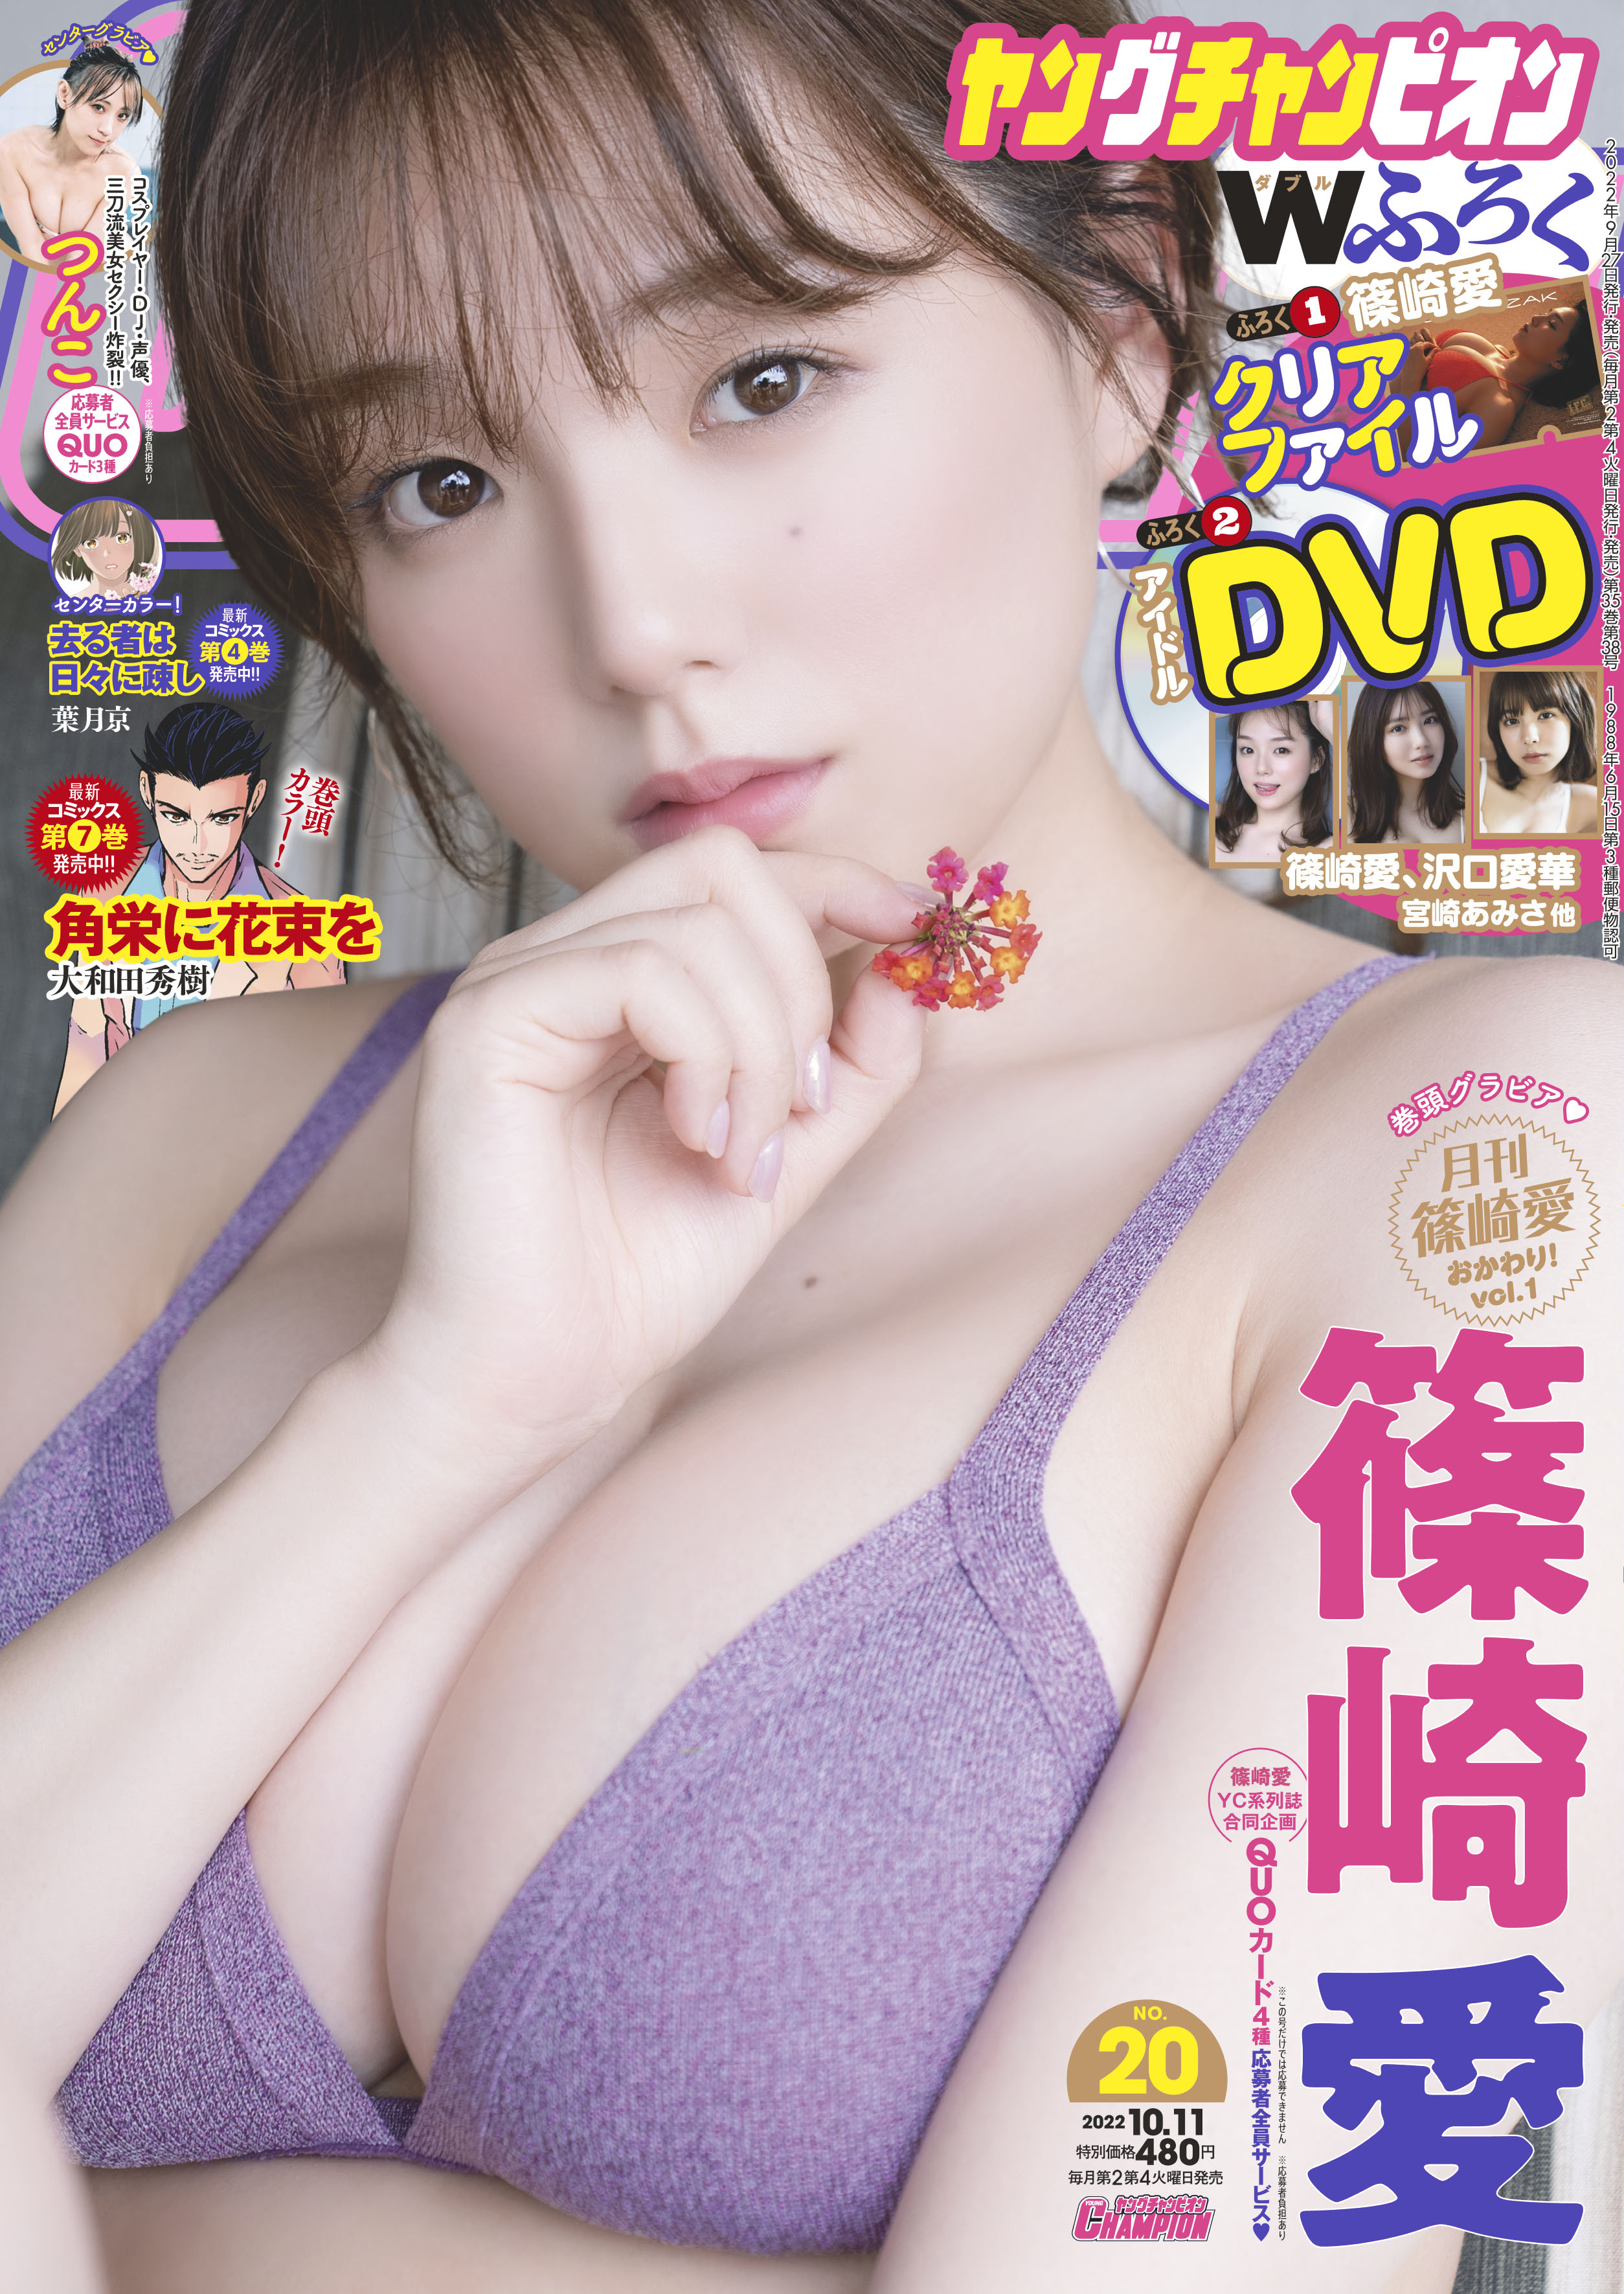 篠崎愛/アイドルワン 篠崎愛 DVD 2巻セット | neumi.it